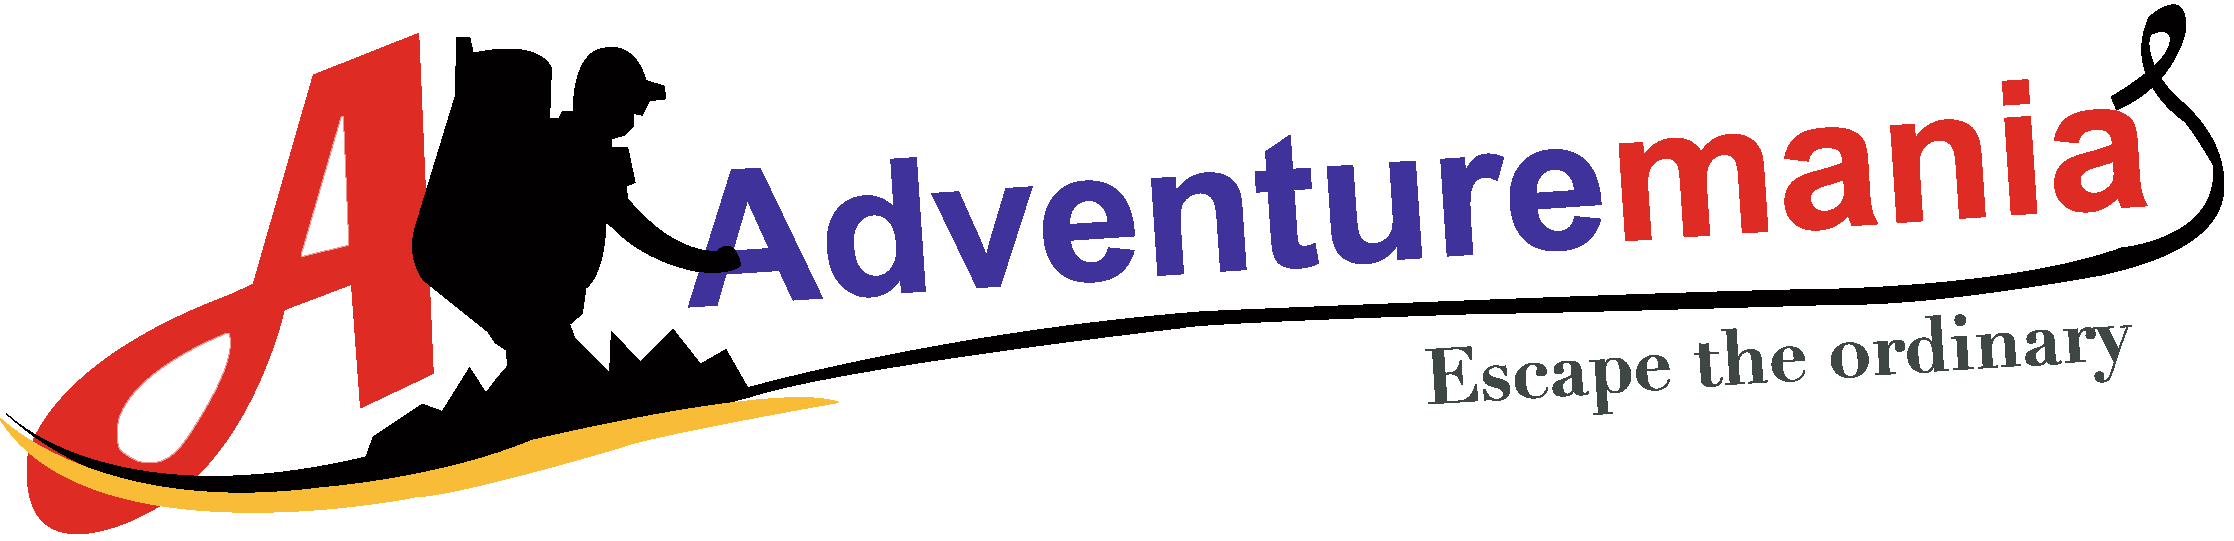 Adventuremania.com